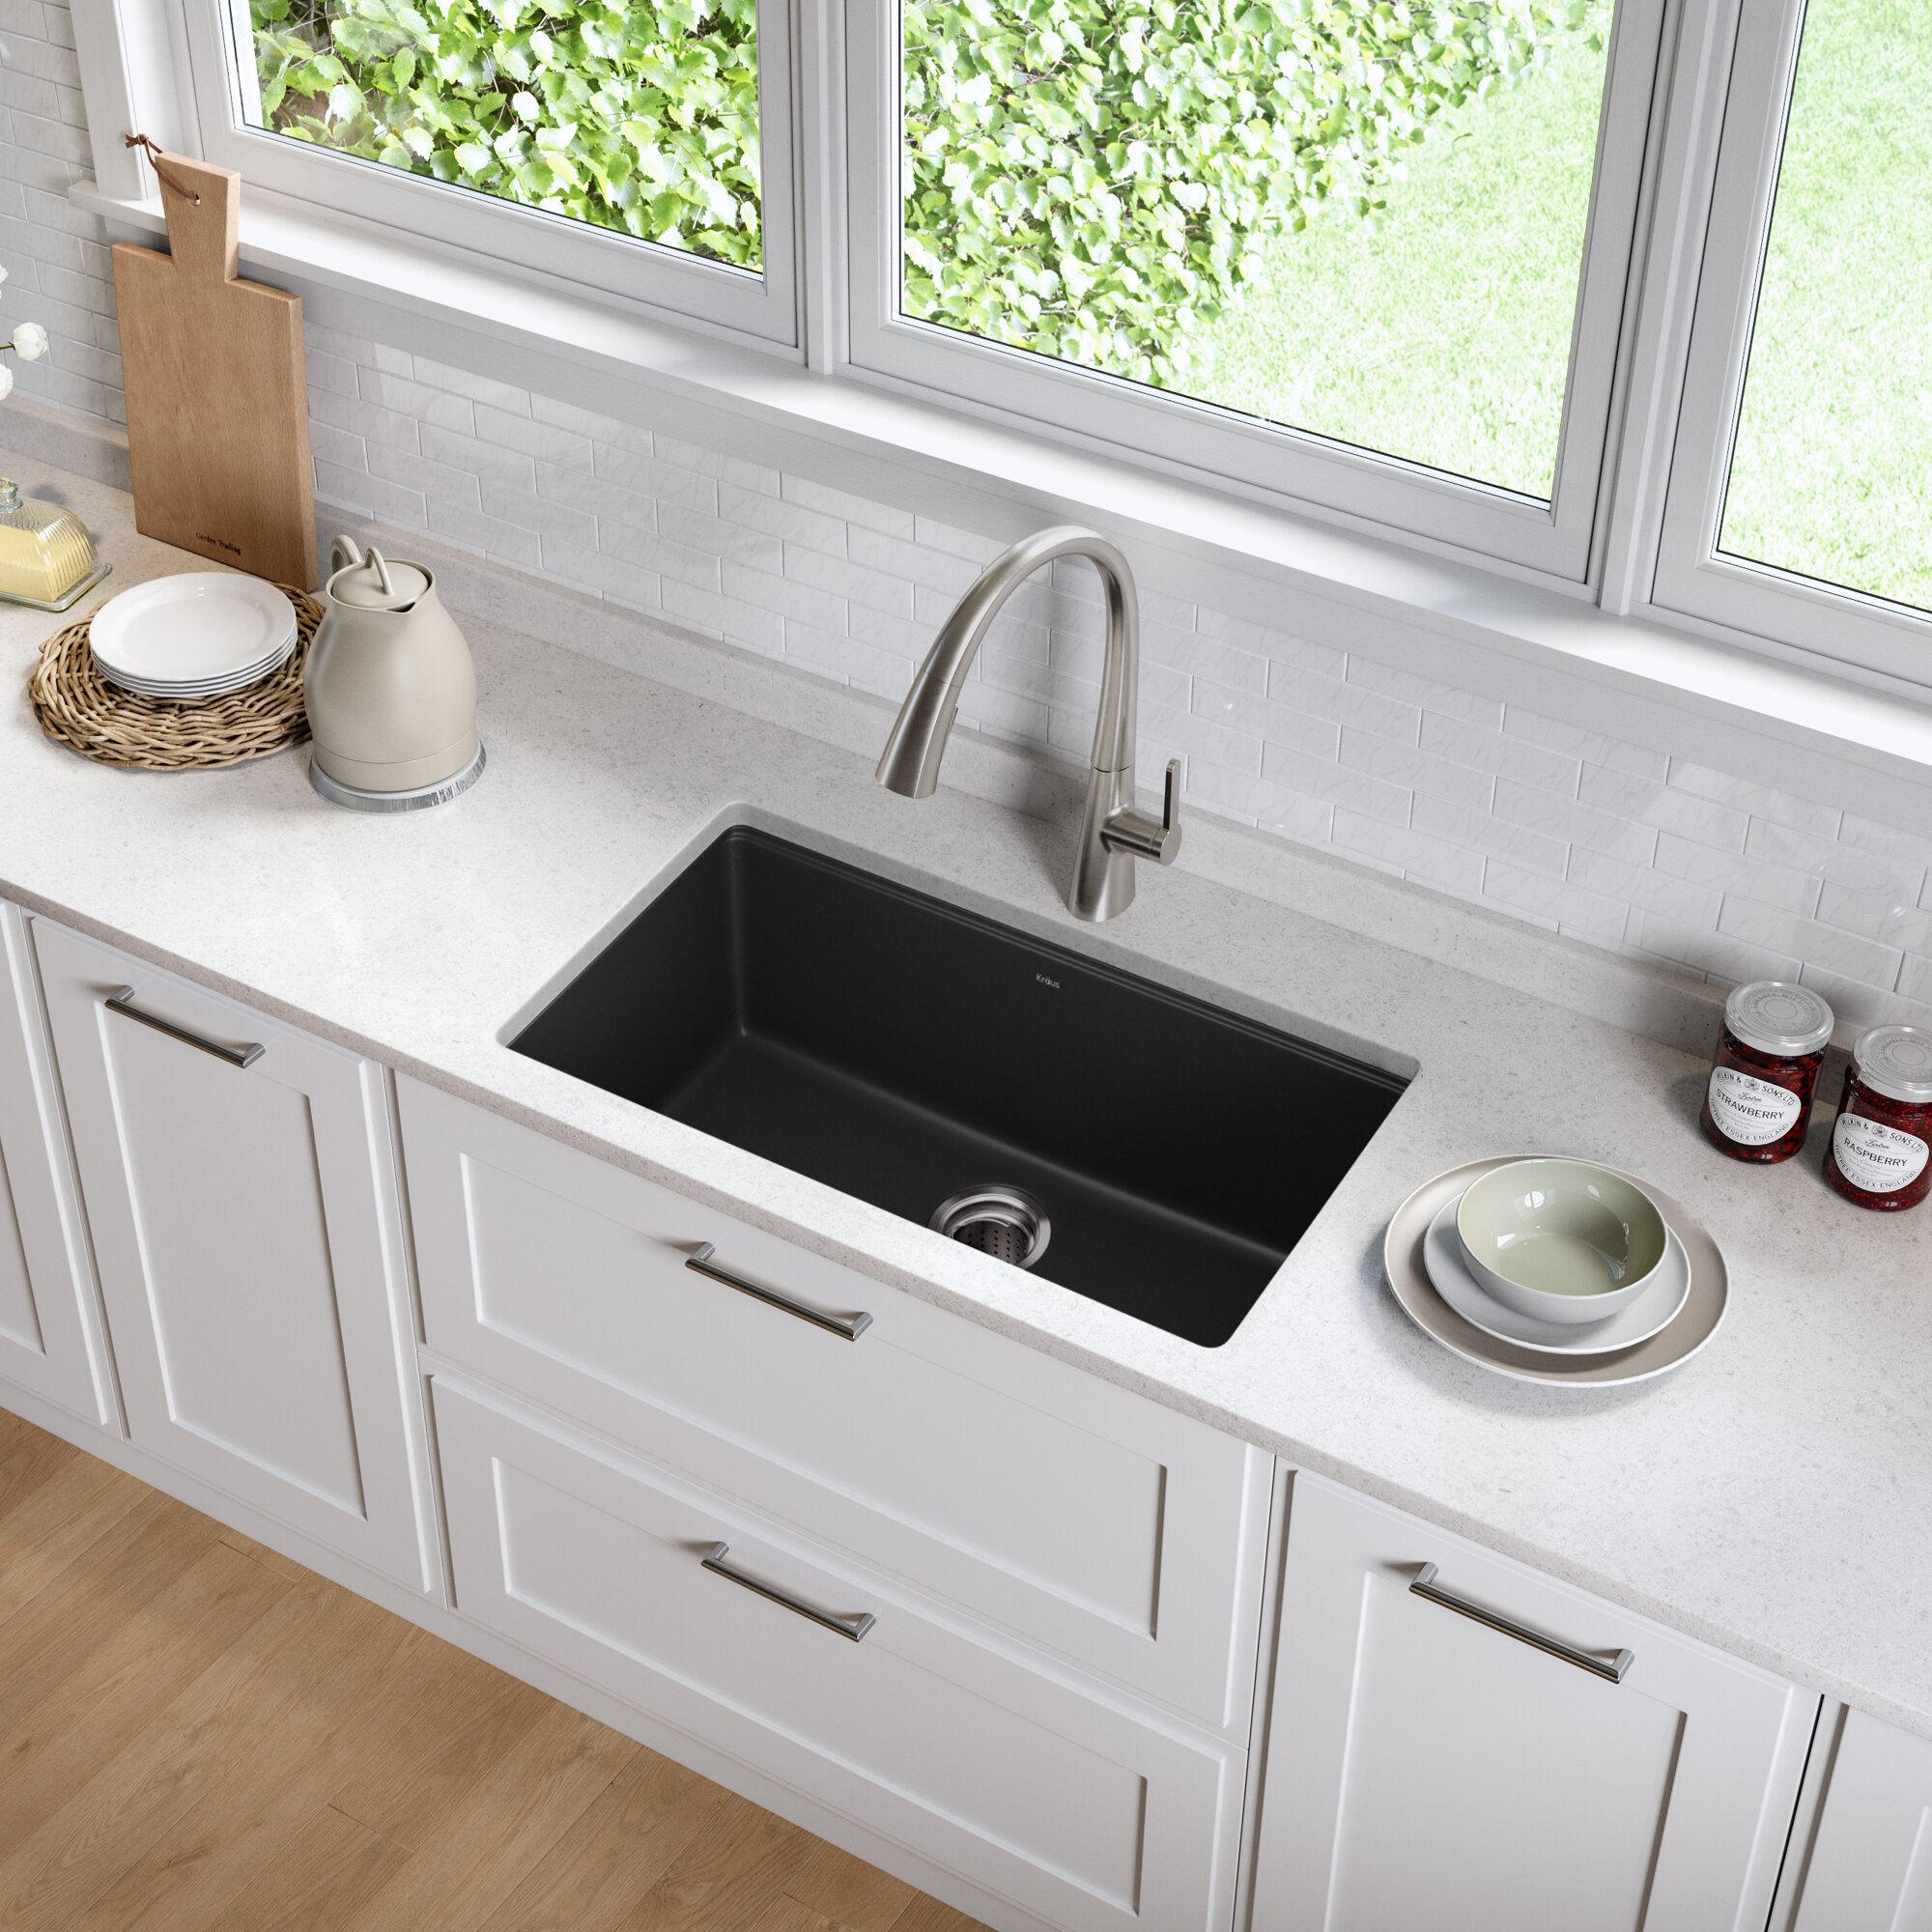 modern kitchen sinks